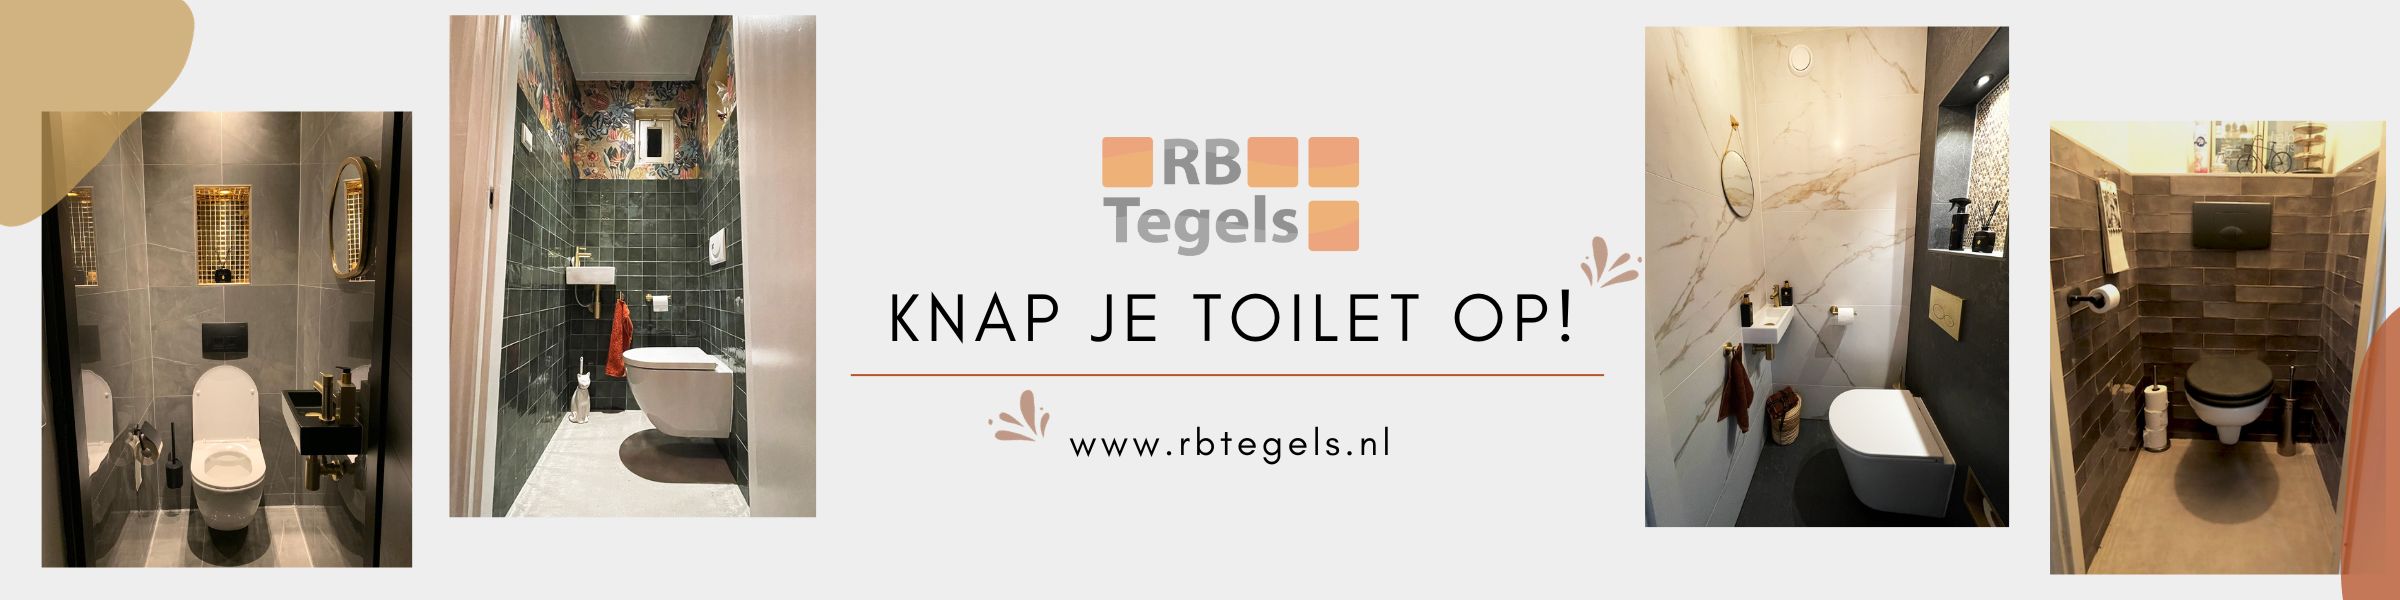 toilet tegels kopen bij rb tegels Den Haag